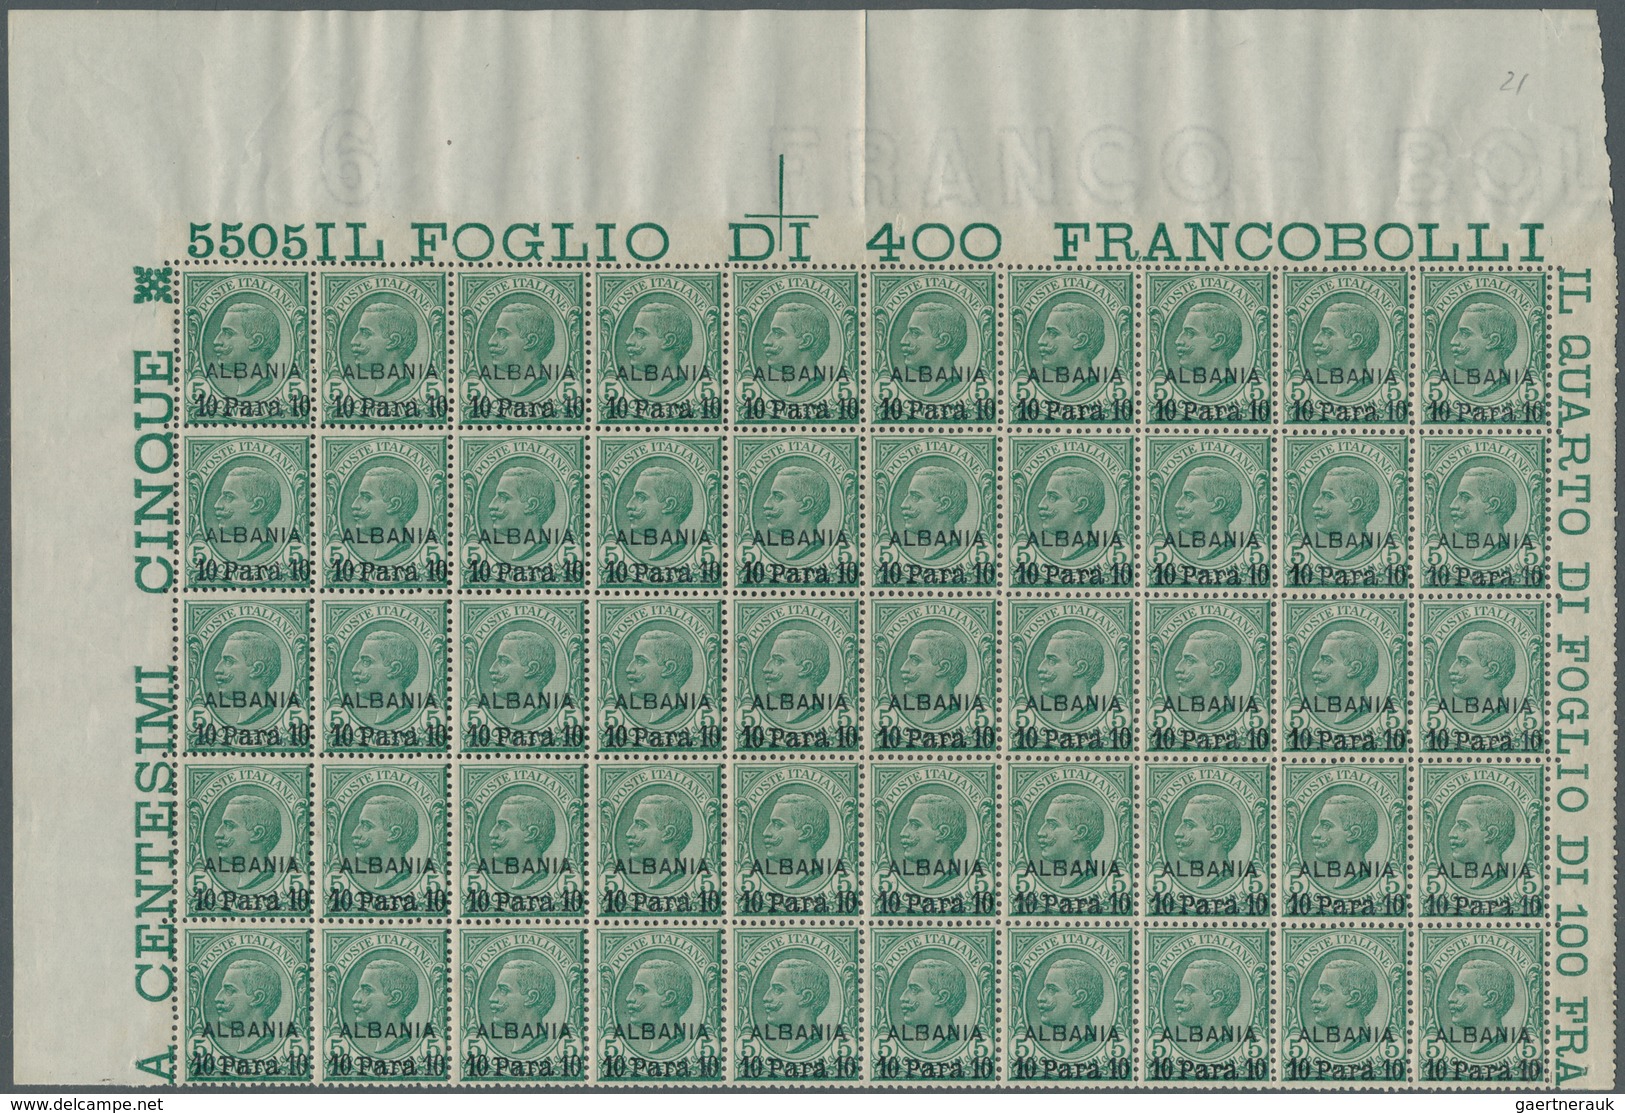 Italienische Post In Albanien: 1907, Victor Emanuel III. 5c. Green With Opt. ‚ALBANIA / 10 Para 10‘ - Albanie